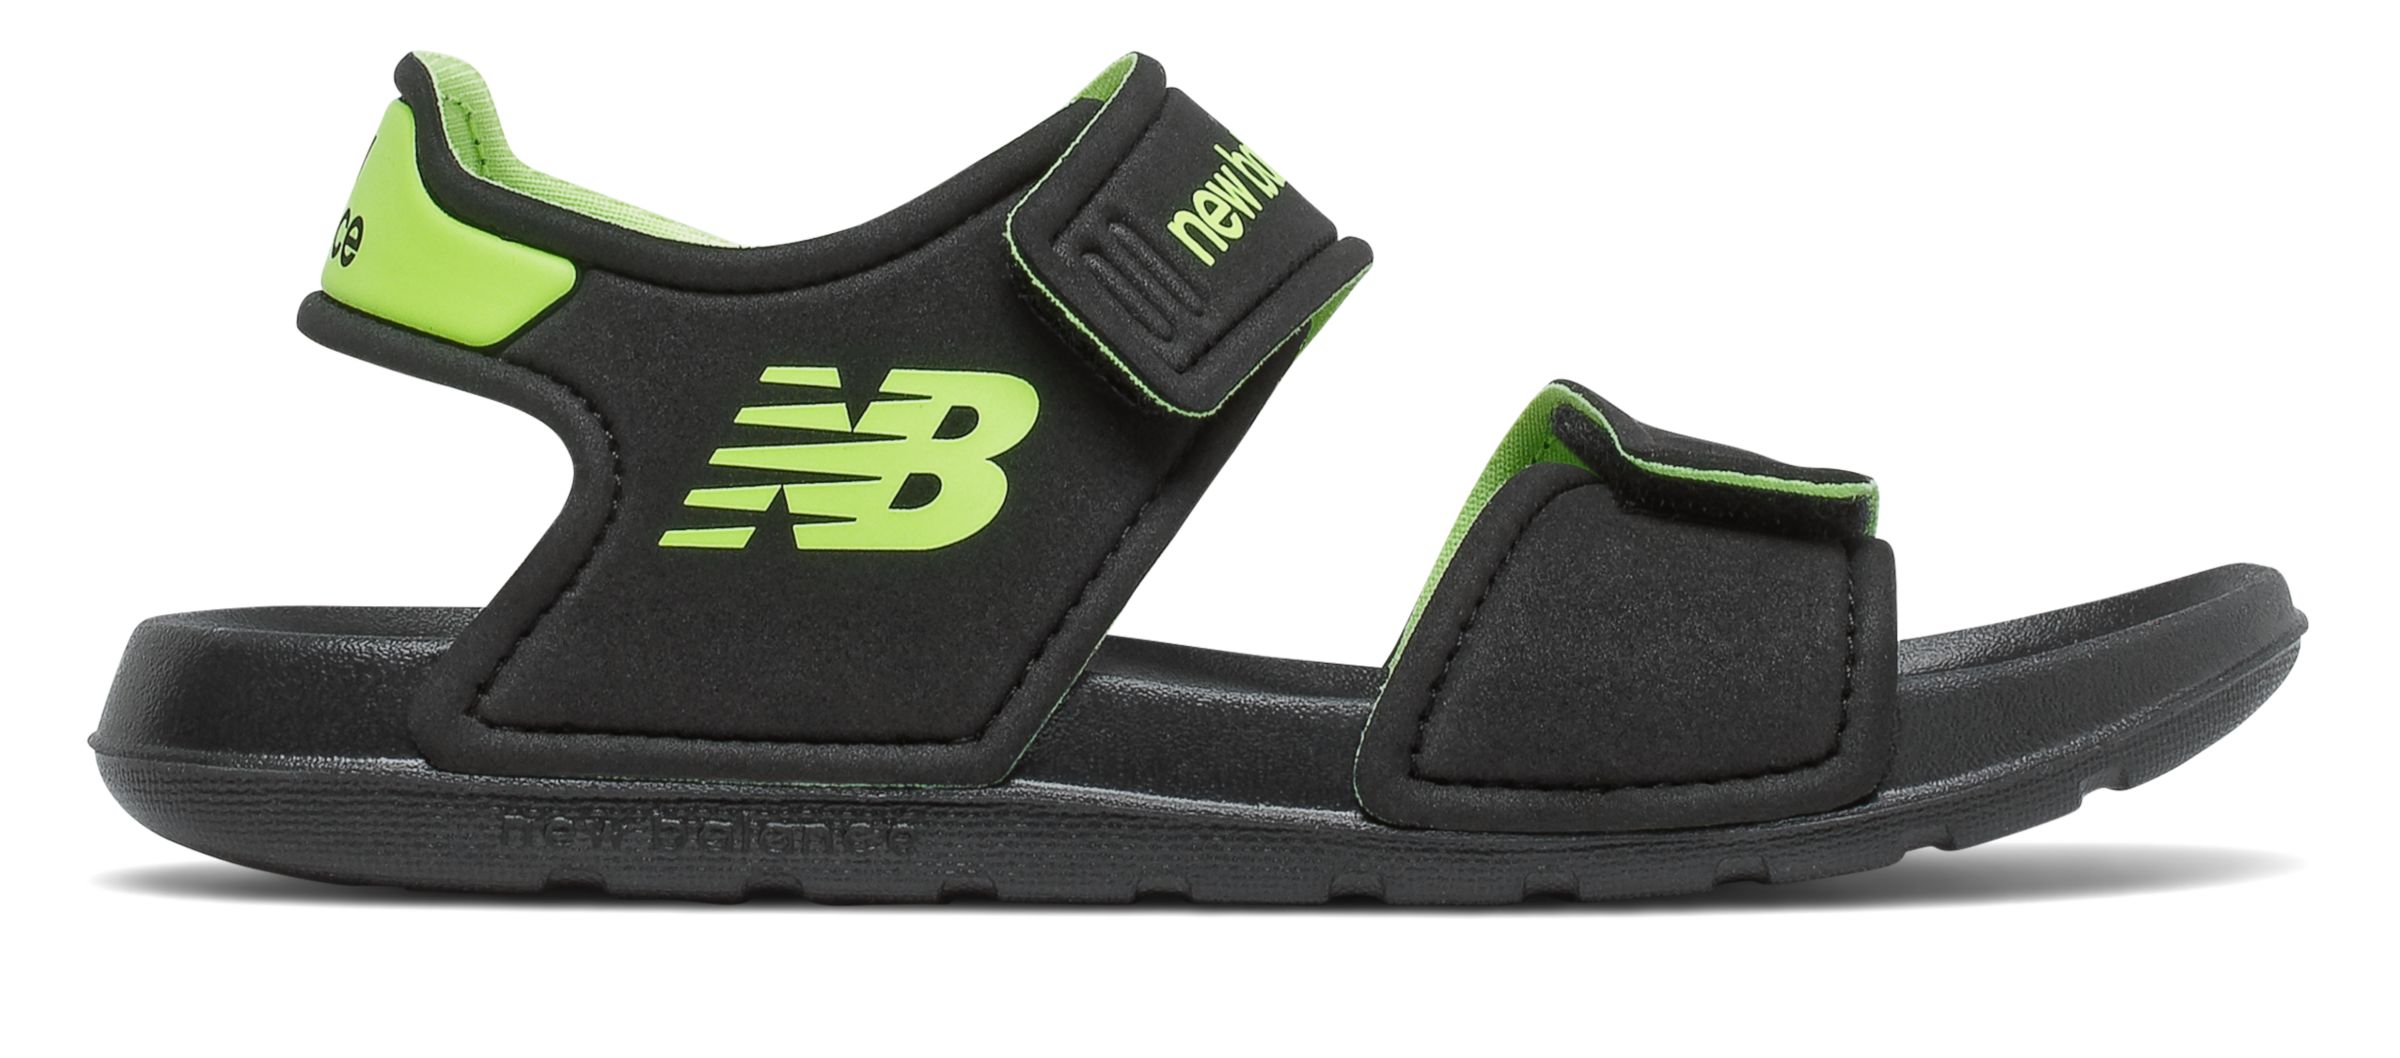 Kids' Sandals, Slides \u0026 Flip Flops 